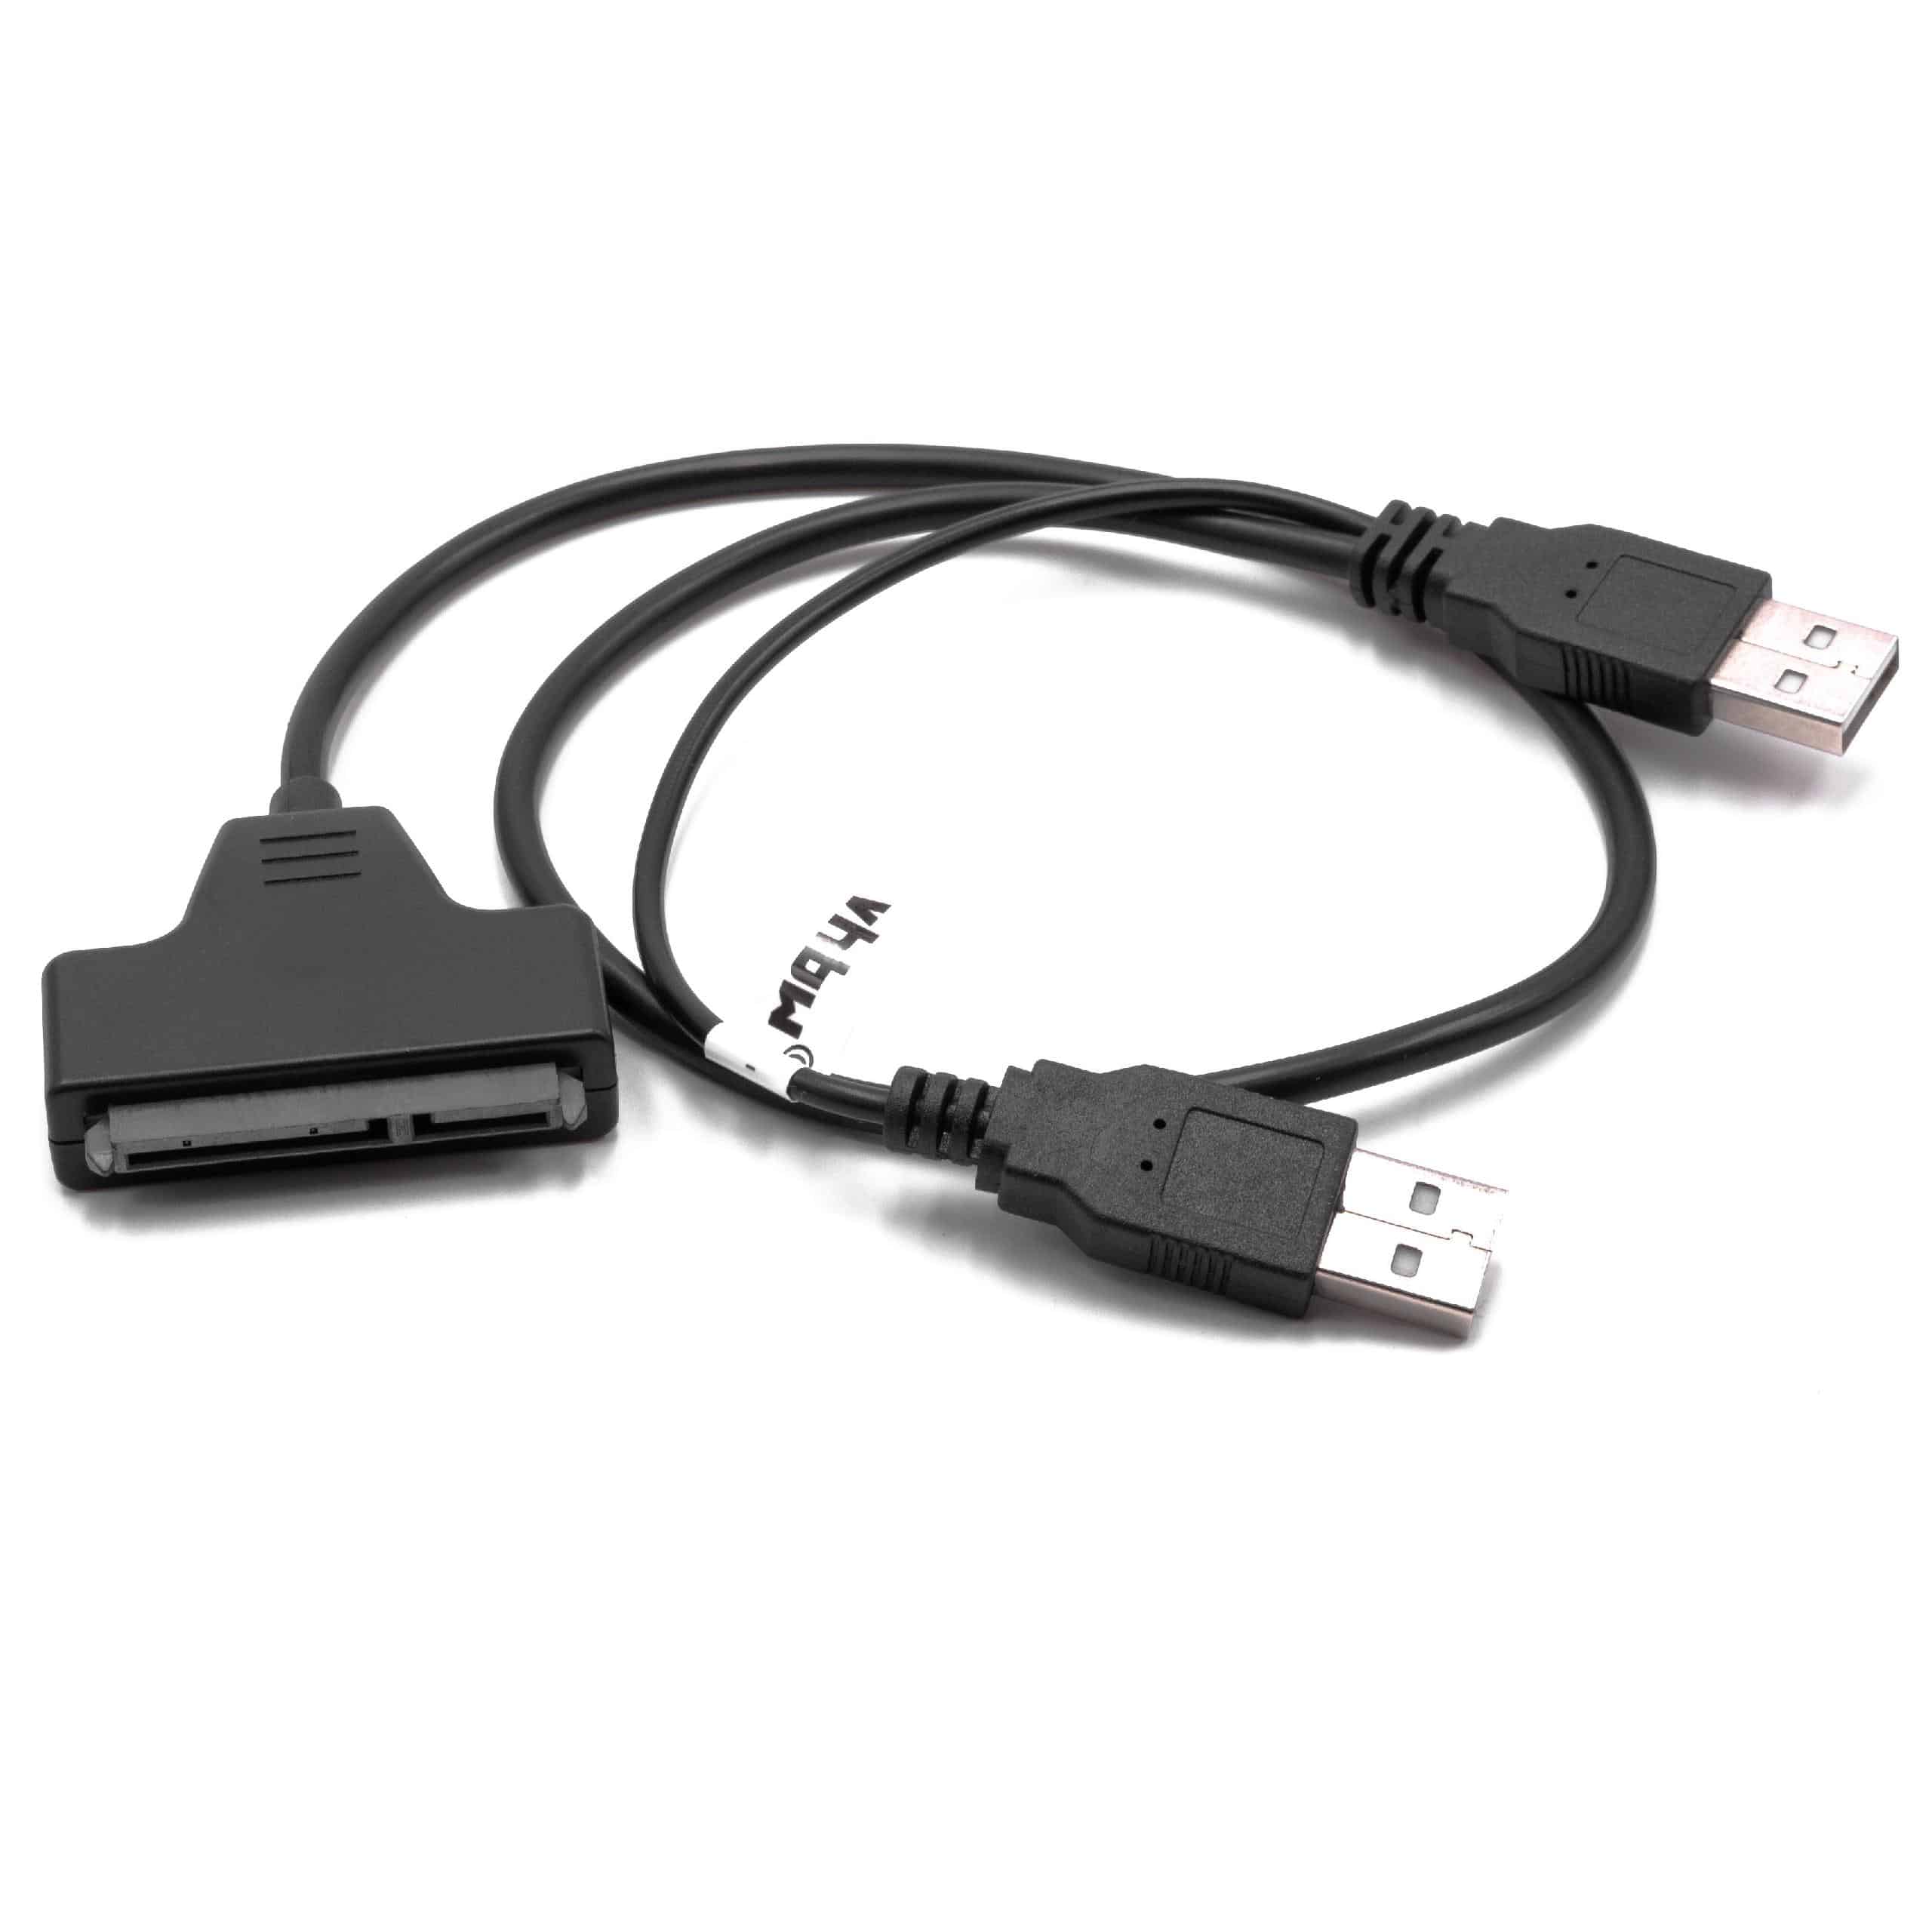 SATA zu USB Adapter Festplattenkabel Anschlusskabel für HDD Festplatten, Plug & Play fähig schwarz